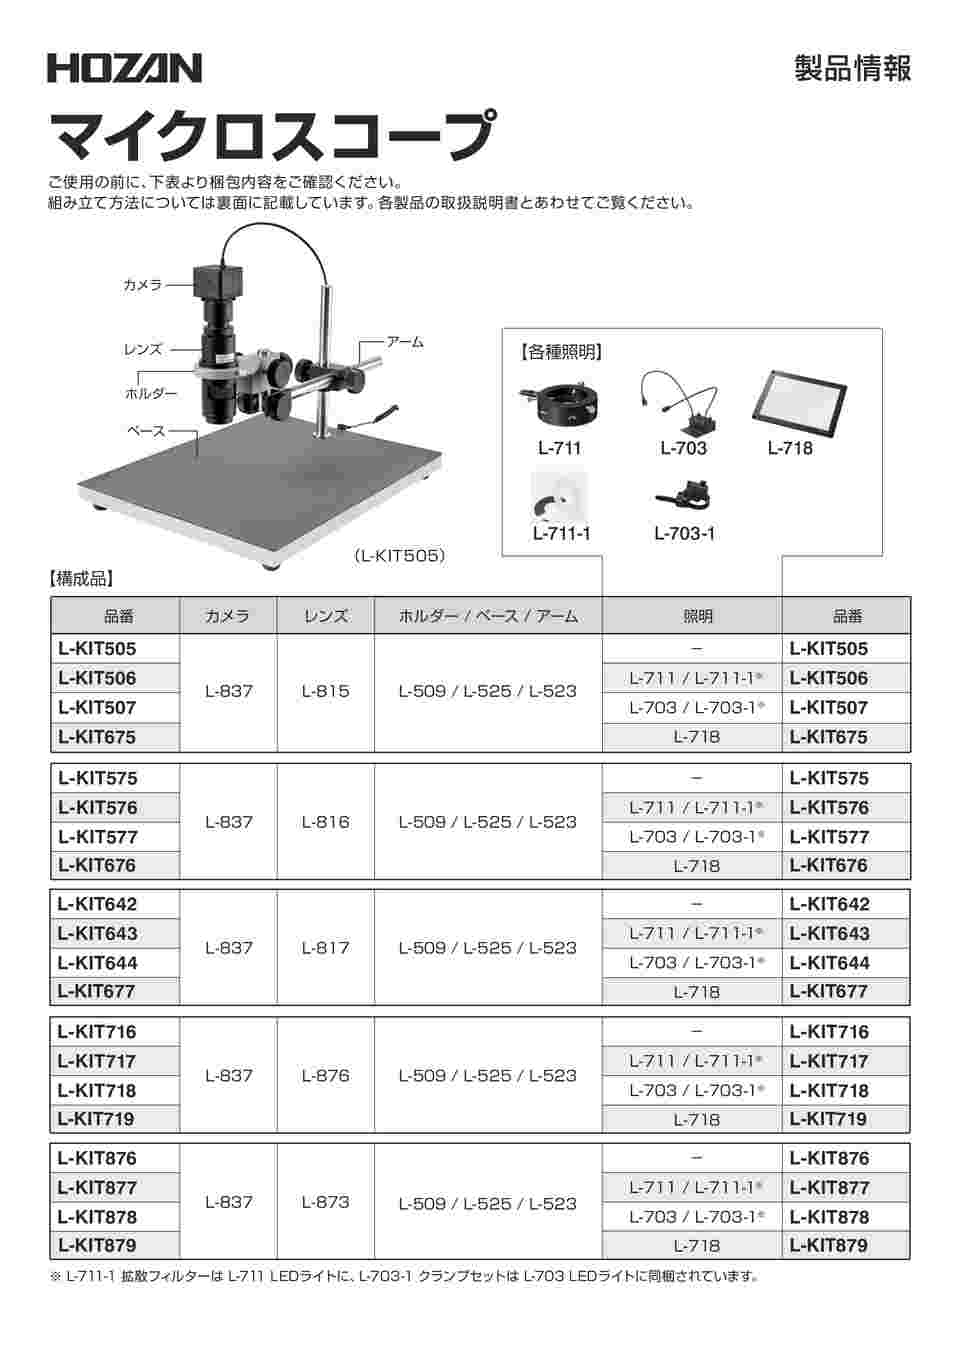 HOZAN L-KIT577 マイクロスコープ PC用 ホーザン - その他光学器械